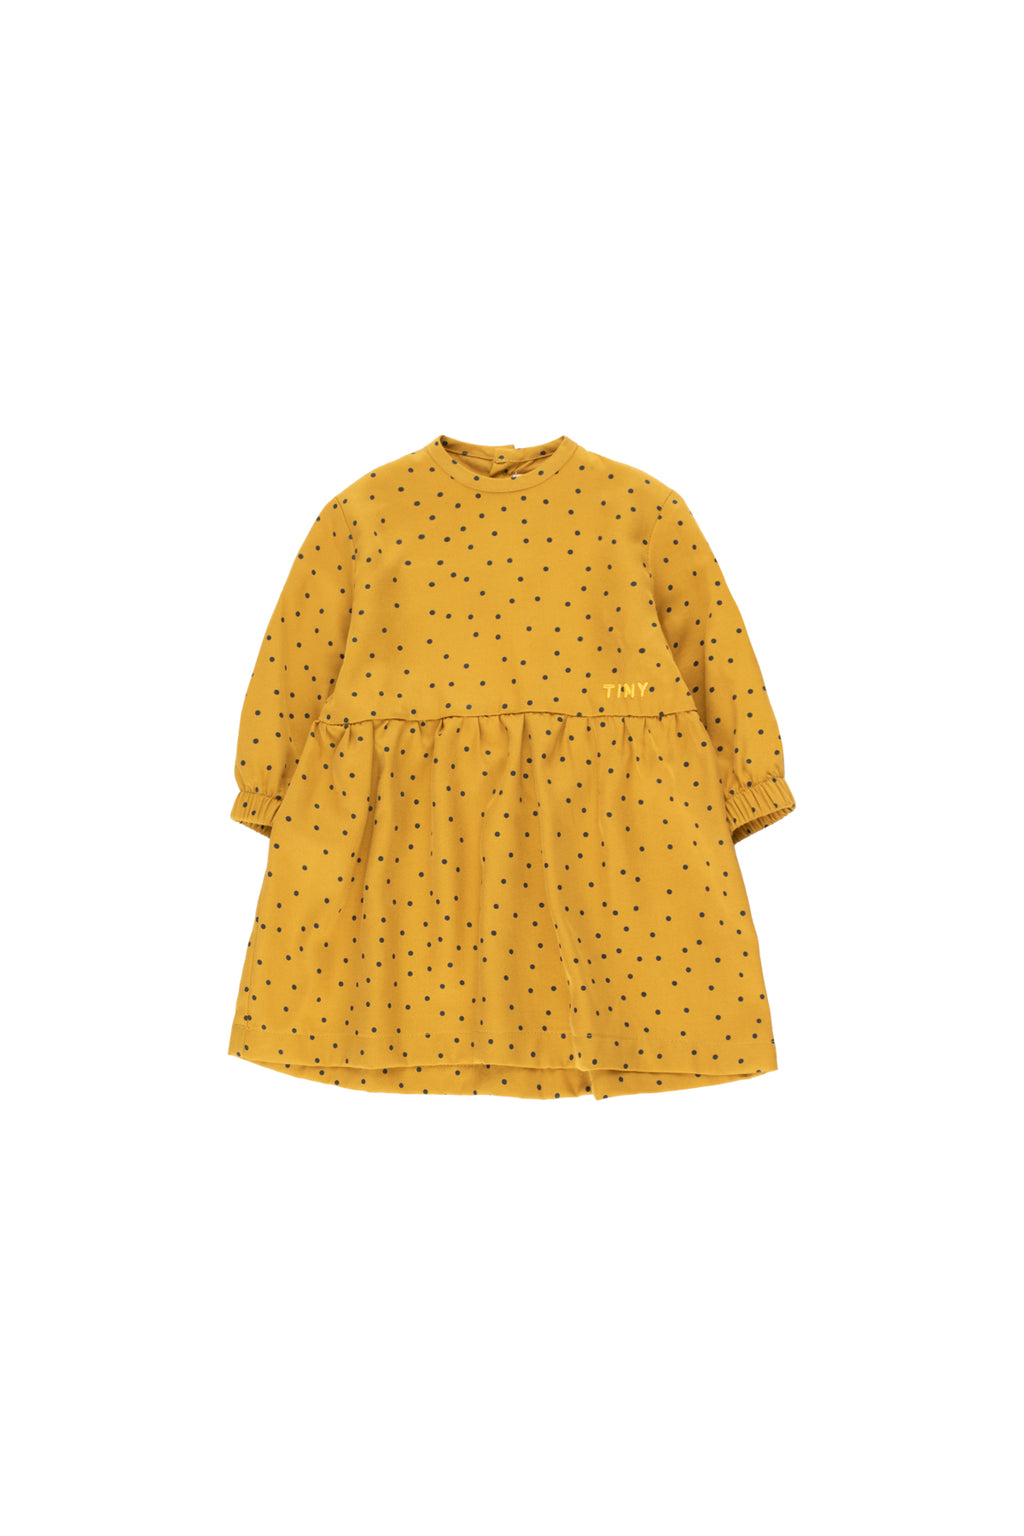 Tiny Cottons Tiny Dots Baby Dress - Mustard/Navy